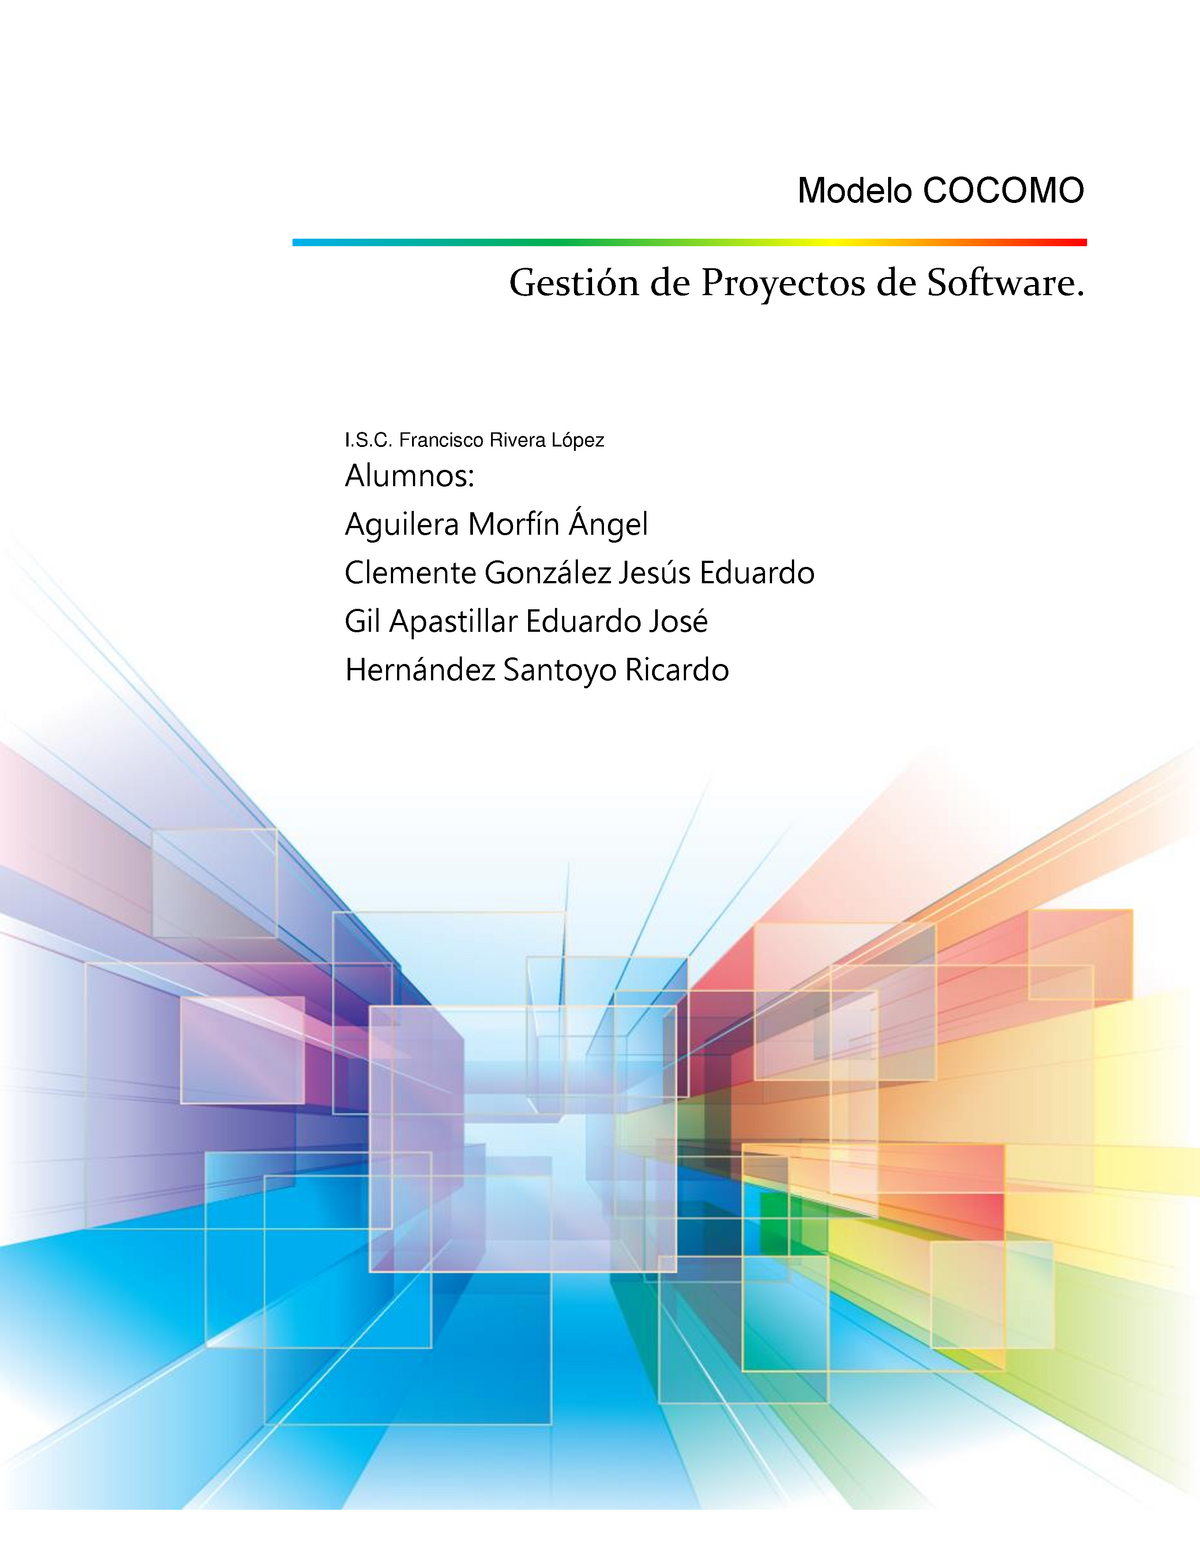 Modelo COCOMO ensayo - Modelo COCOMO Gestión de Proyectos de Software. .  Francisco Rivera López - Studocu